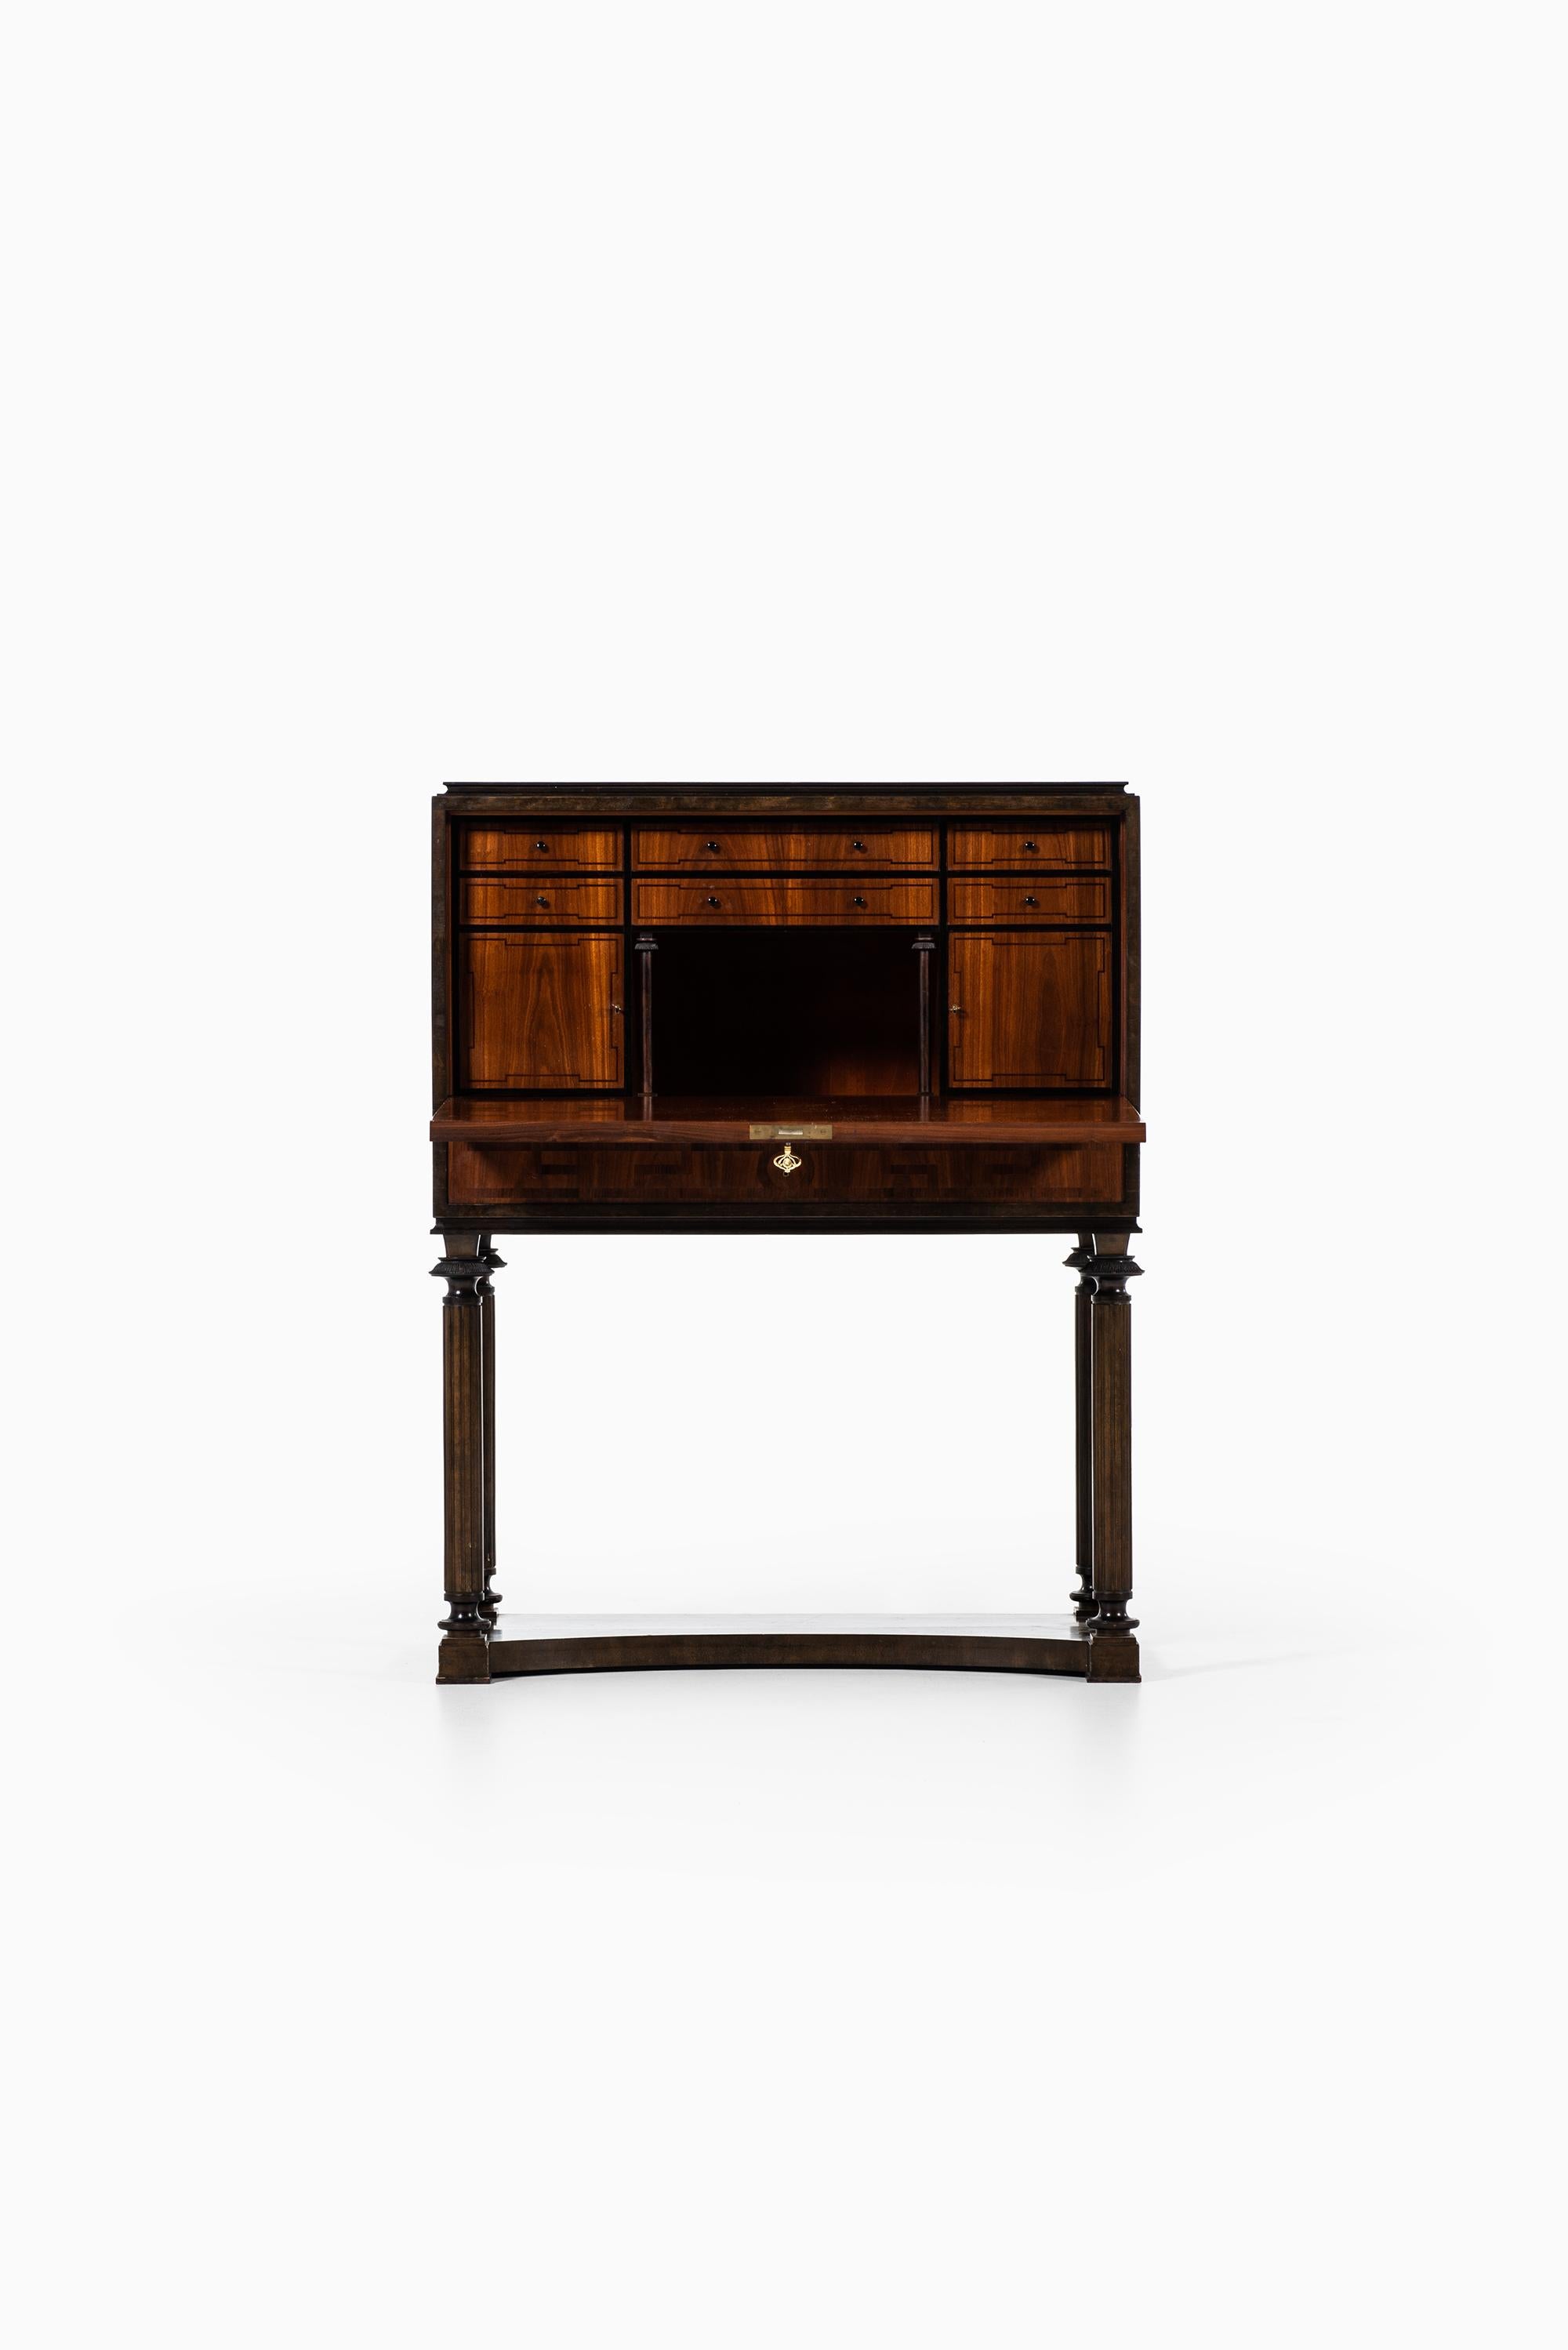 Rare cabinet or secretaire designed by Nils Öfverman. Produced by carpenter L. Löfberg in Stockholm, Sweden.